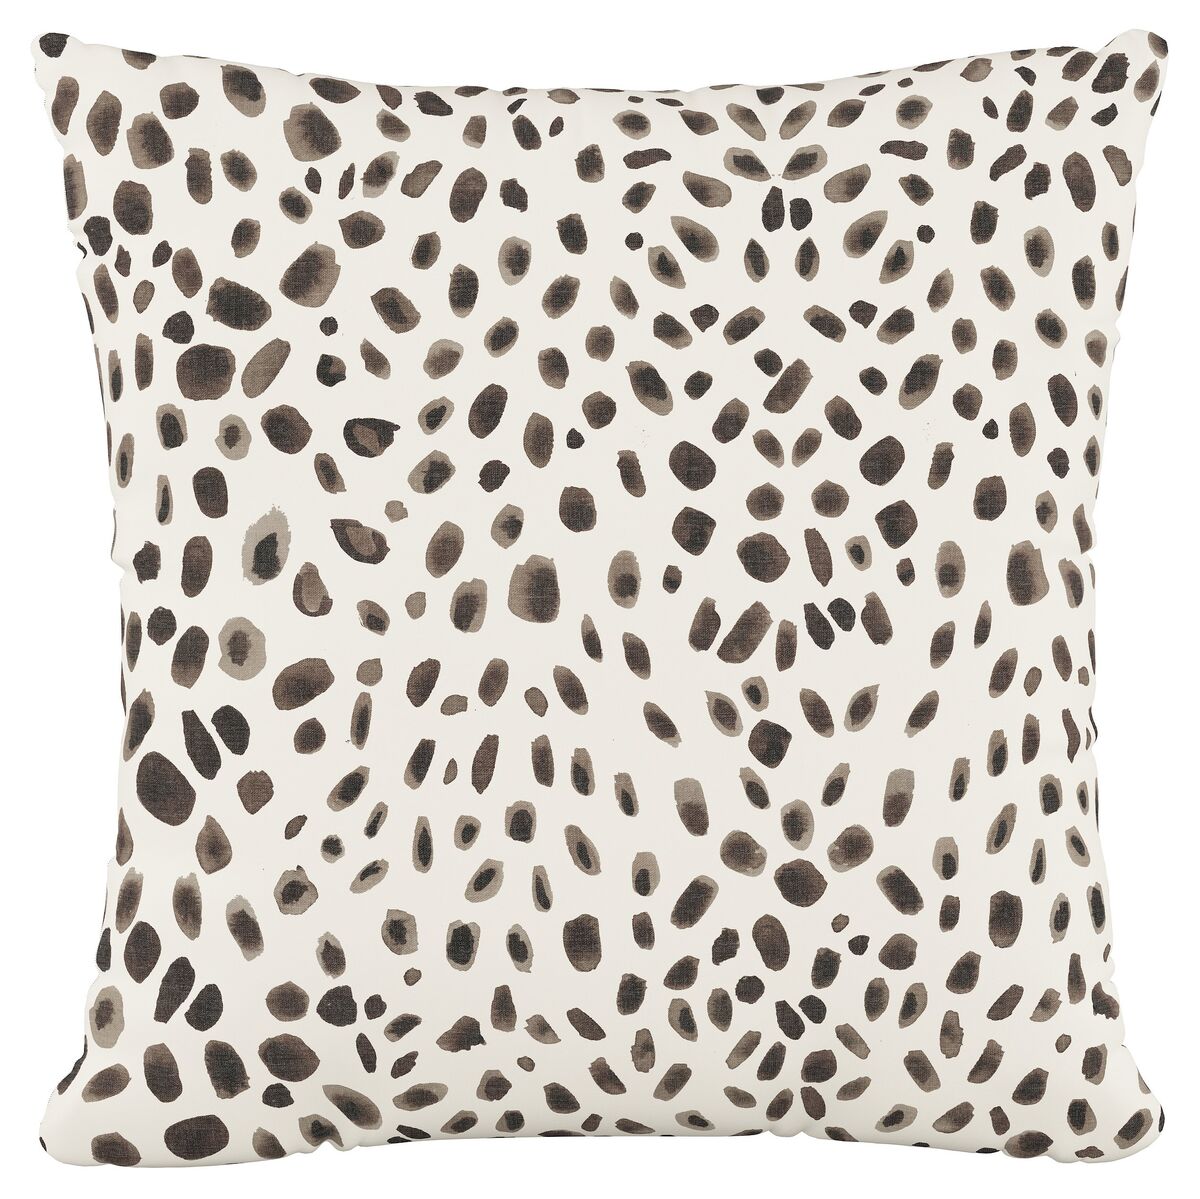 Washed Cheetah pillow